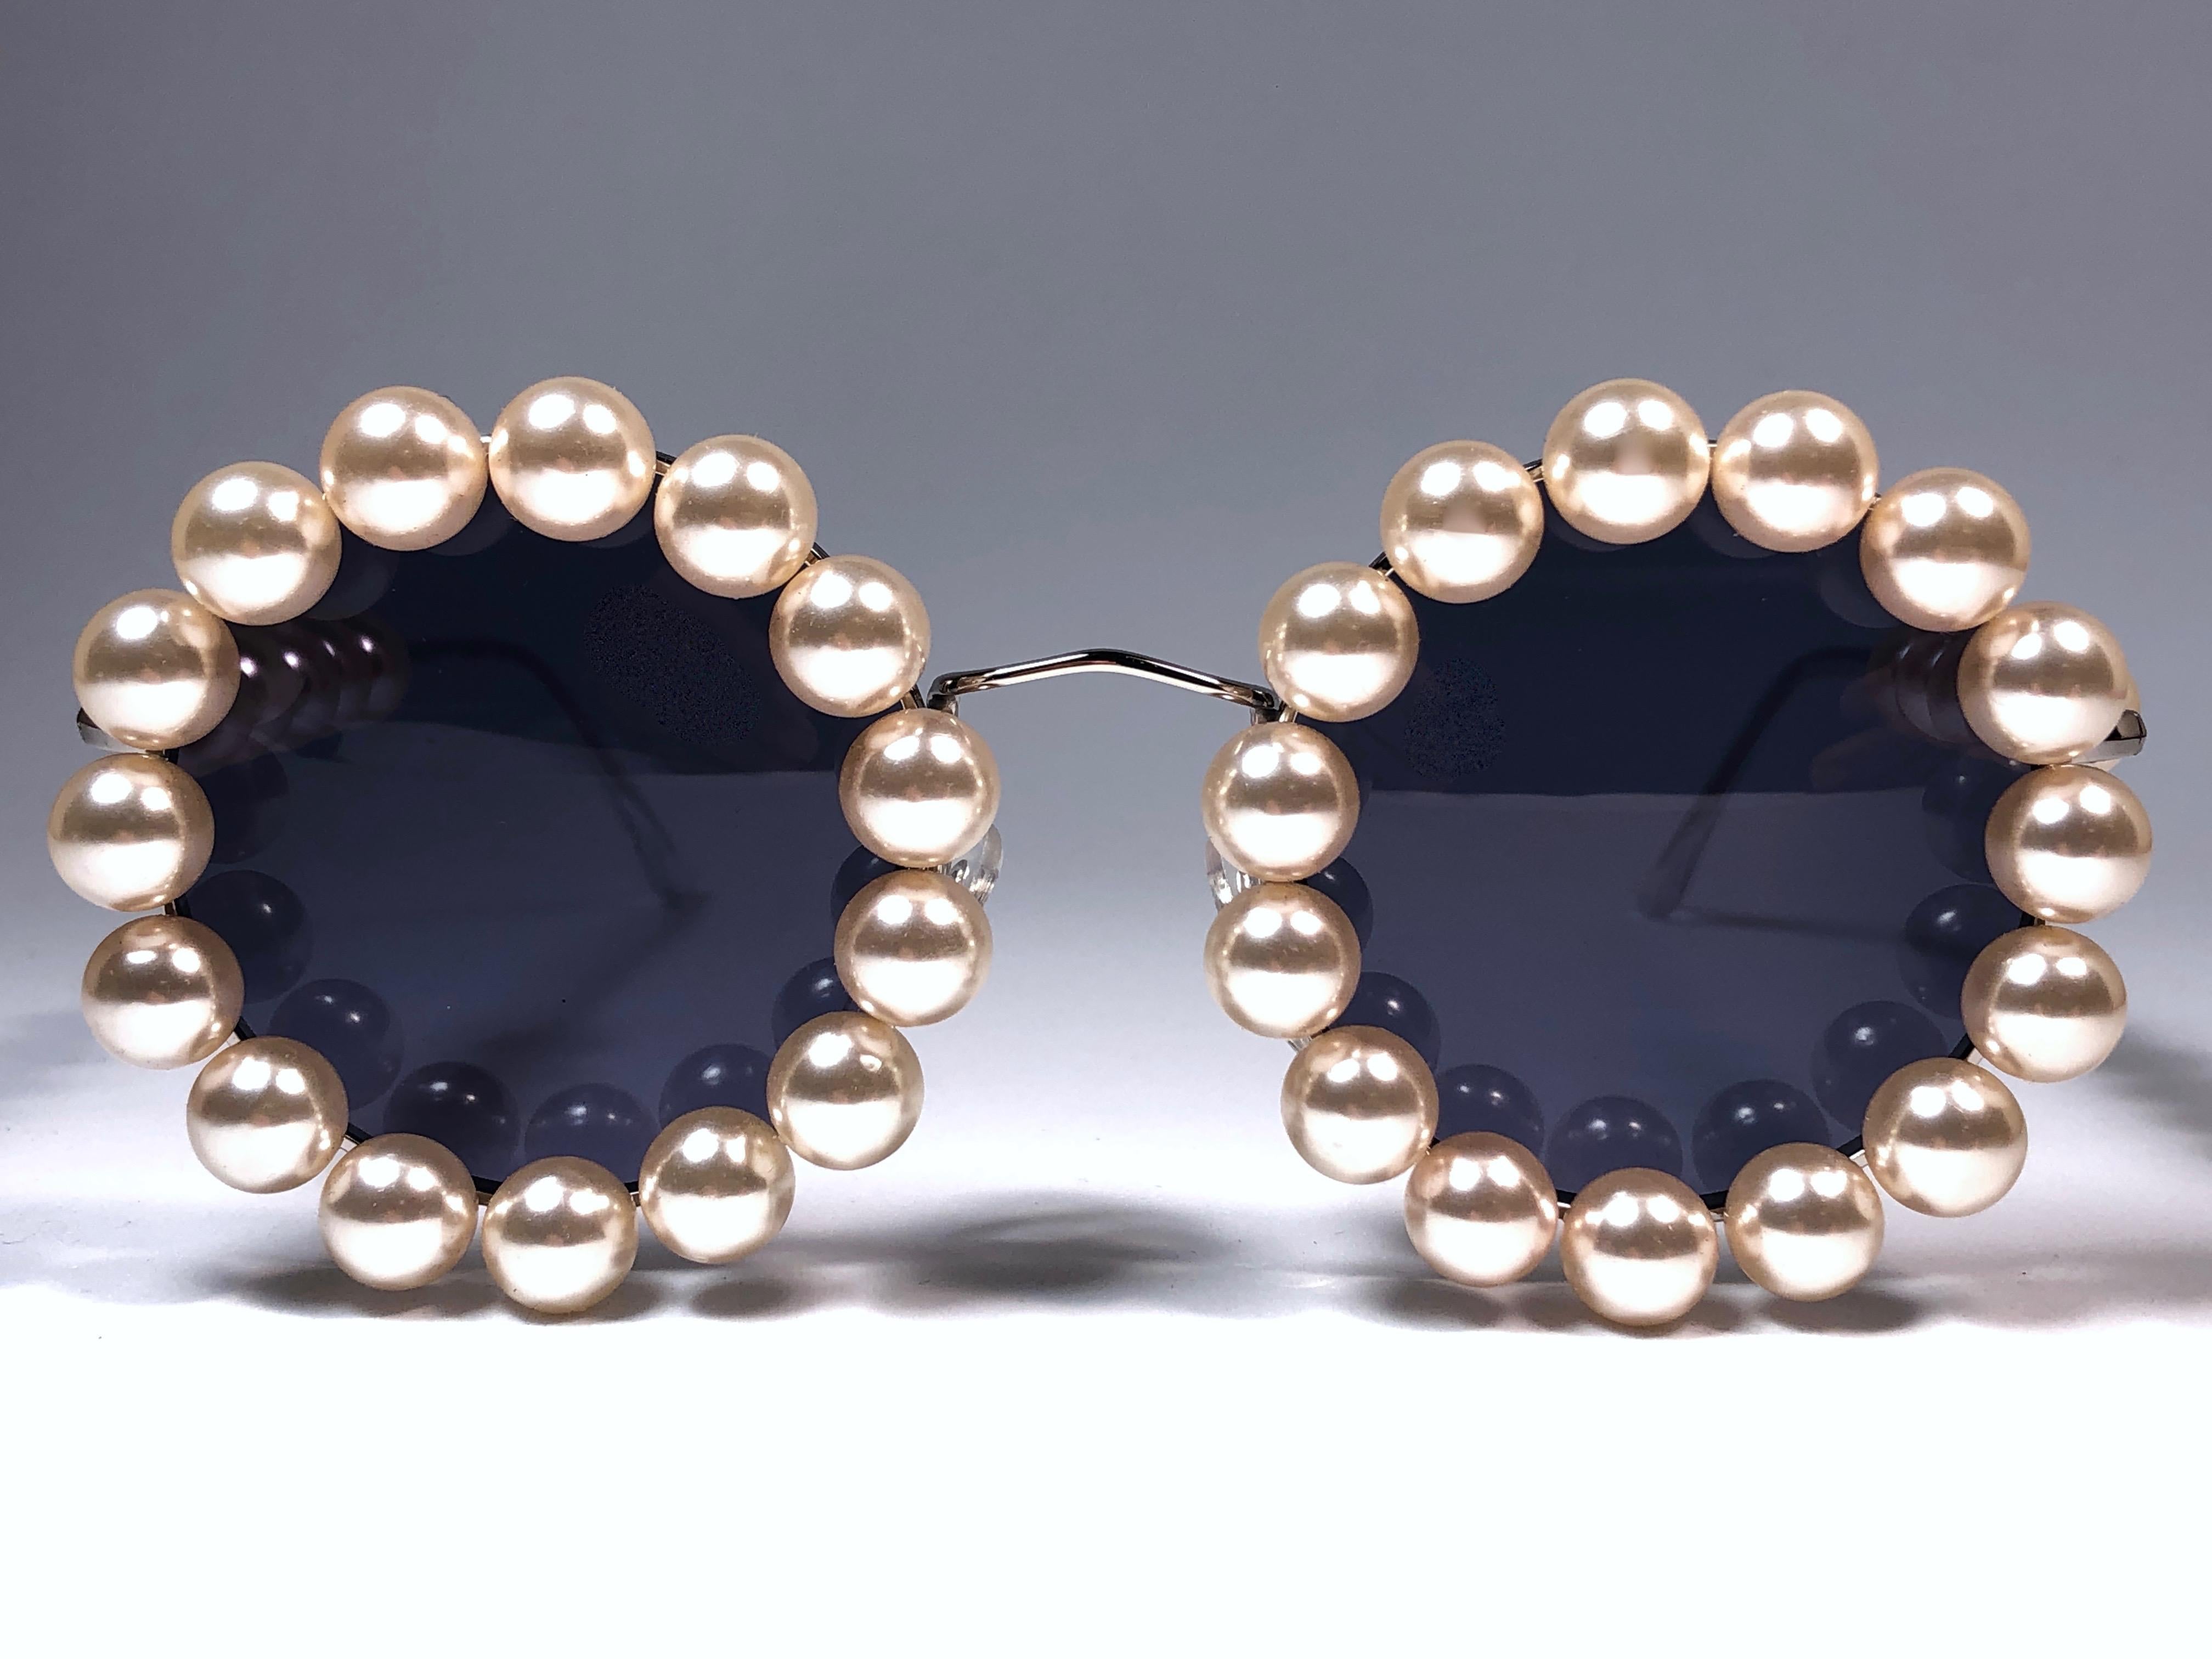 New Rare Vintage Chanel faux Perle Sonnenbrille für die Frühjahr-Sommer-Show 1994.

Ein seltenes und einzigartiges Stück in diesem neuen, nie ausgestellten oder getragenen Zustand. Dieser Artikel kann leichte Abnutzungserscheinungen aufgrund der